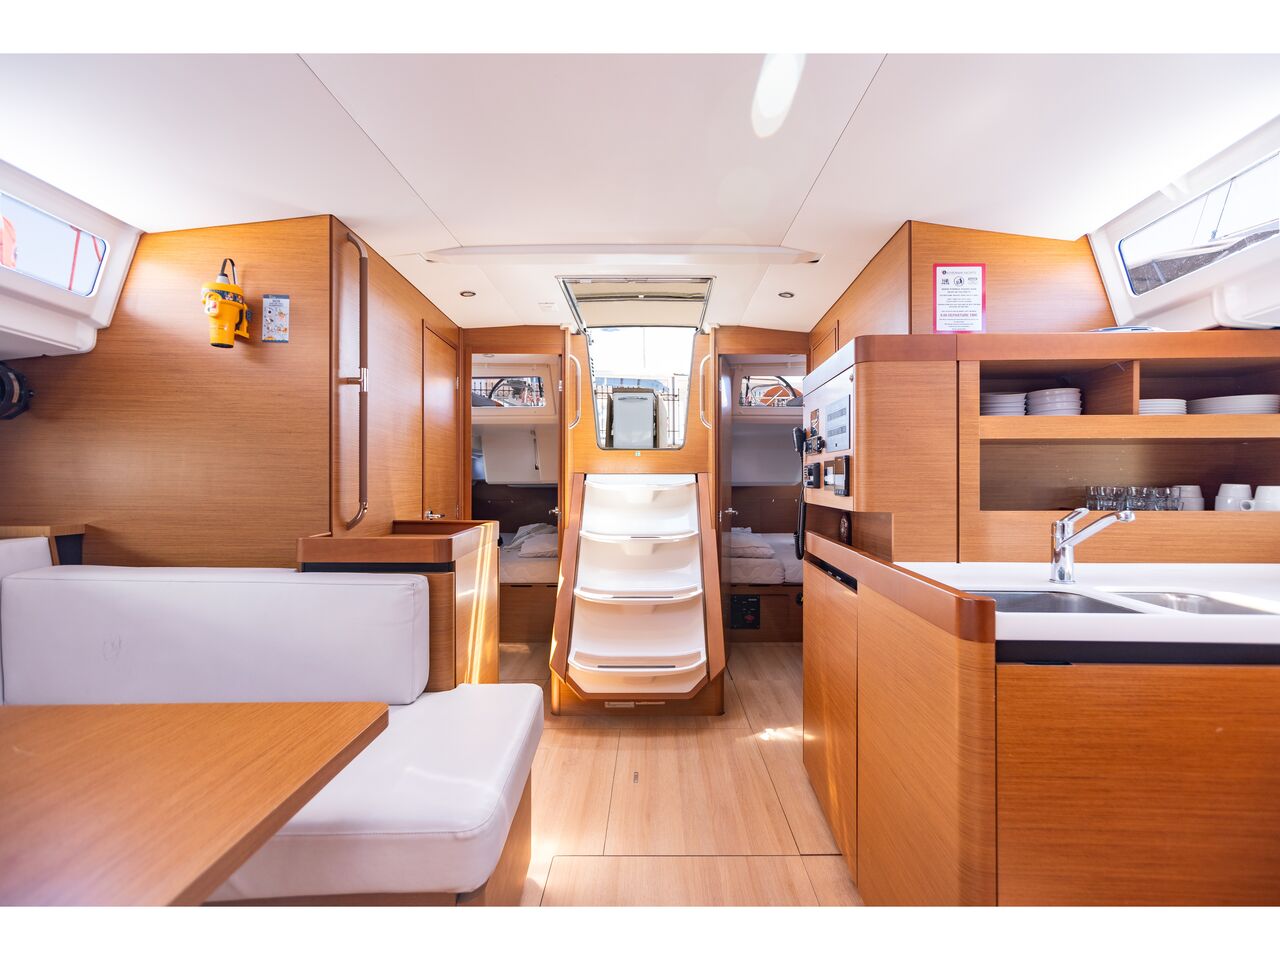 Jeanneau Sun Odyssey 490 4 Cabins - imagem 3